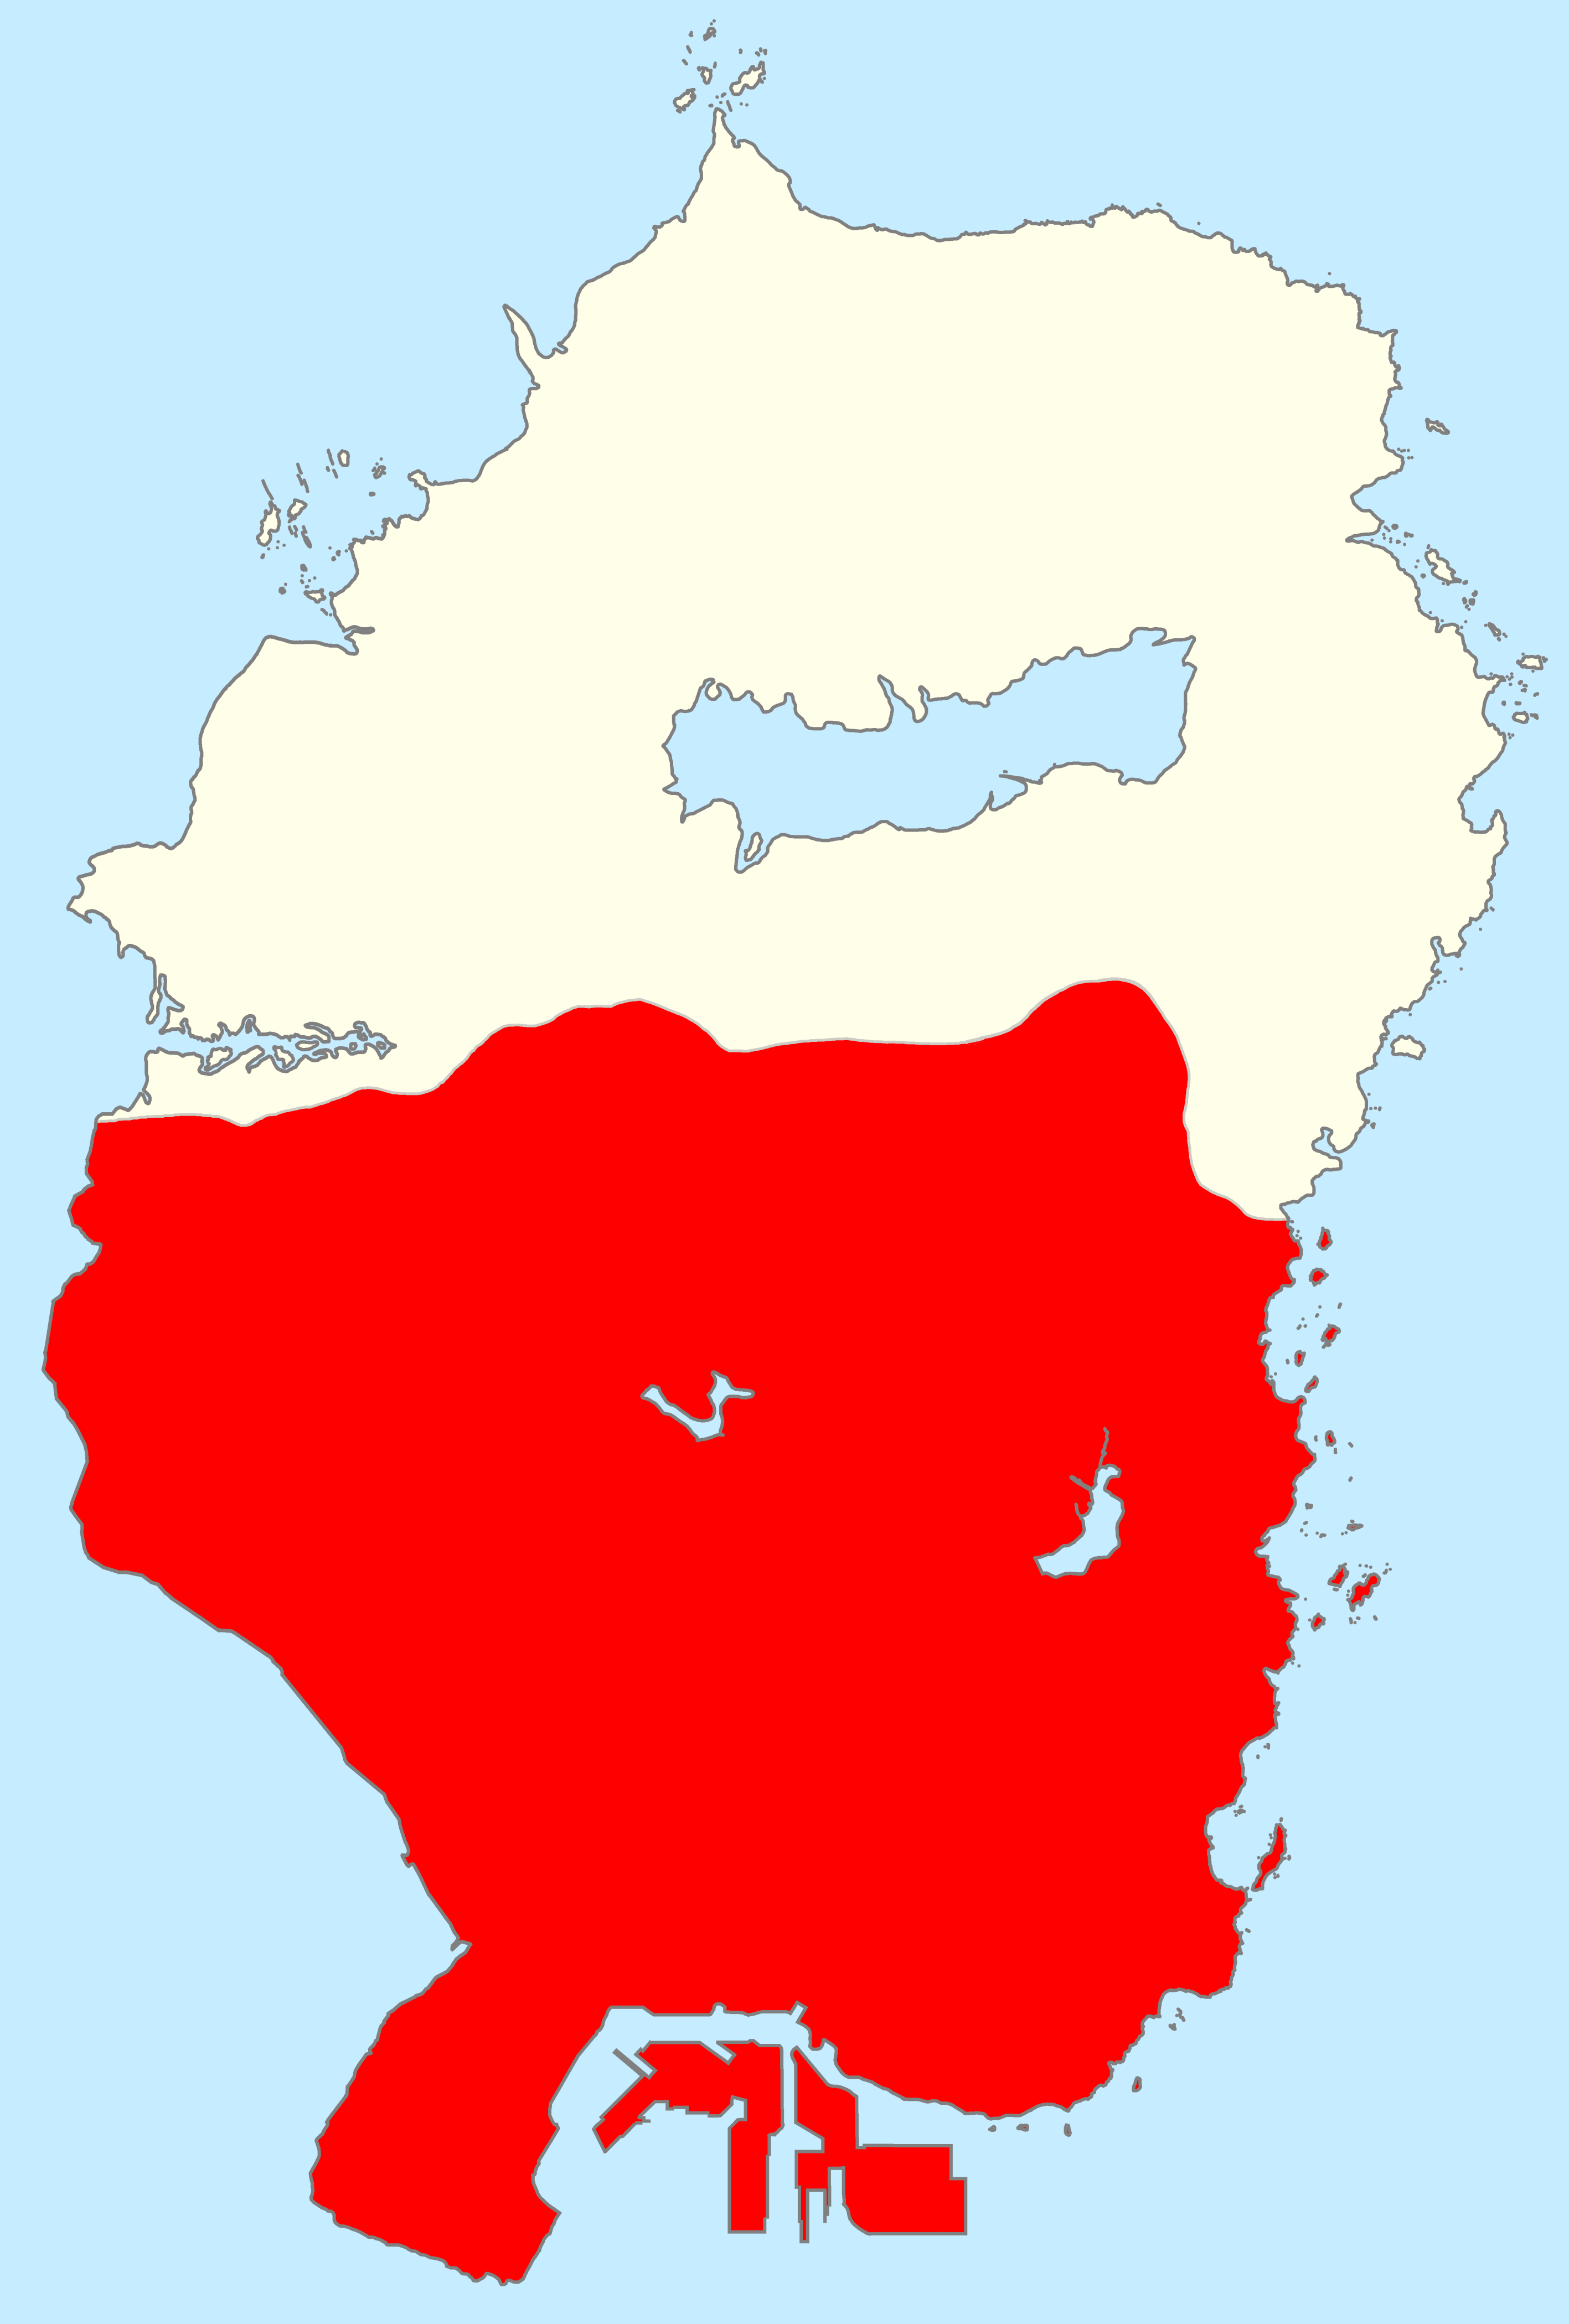 Los Santos Zone - Wikipedia